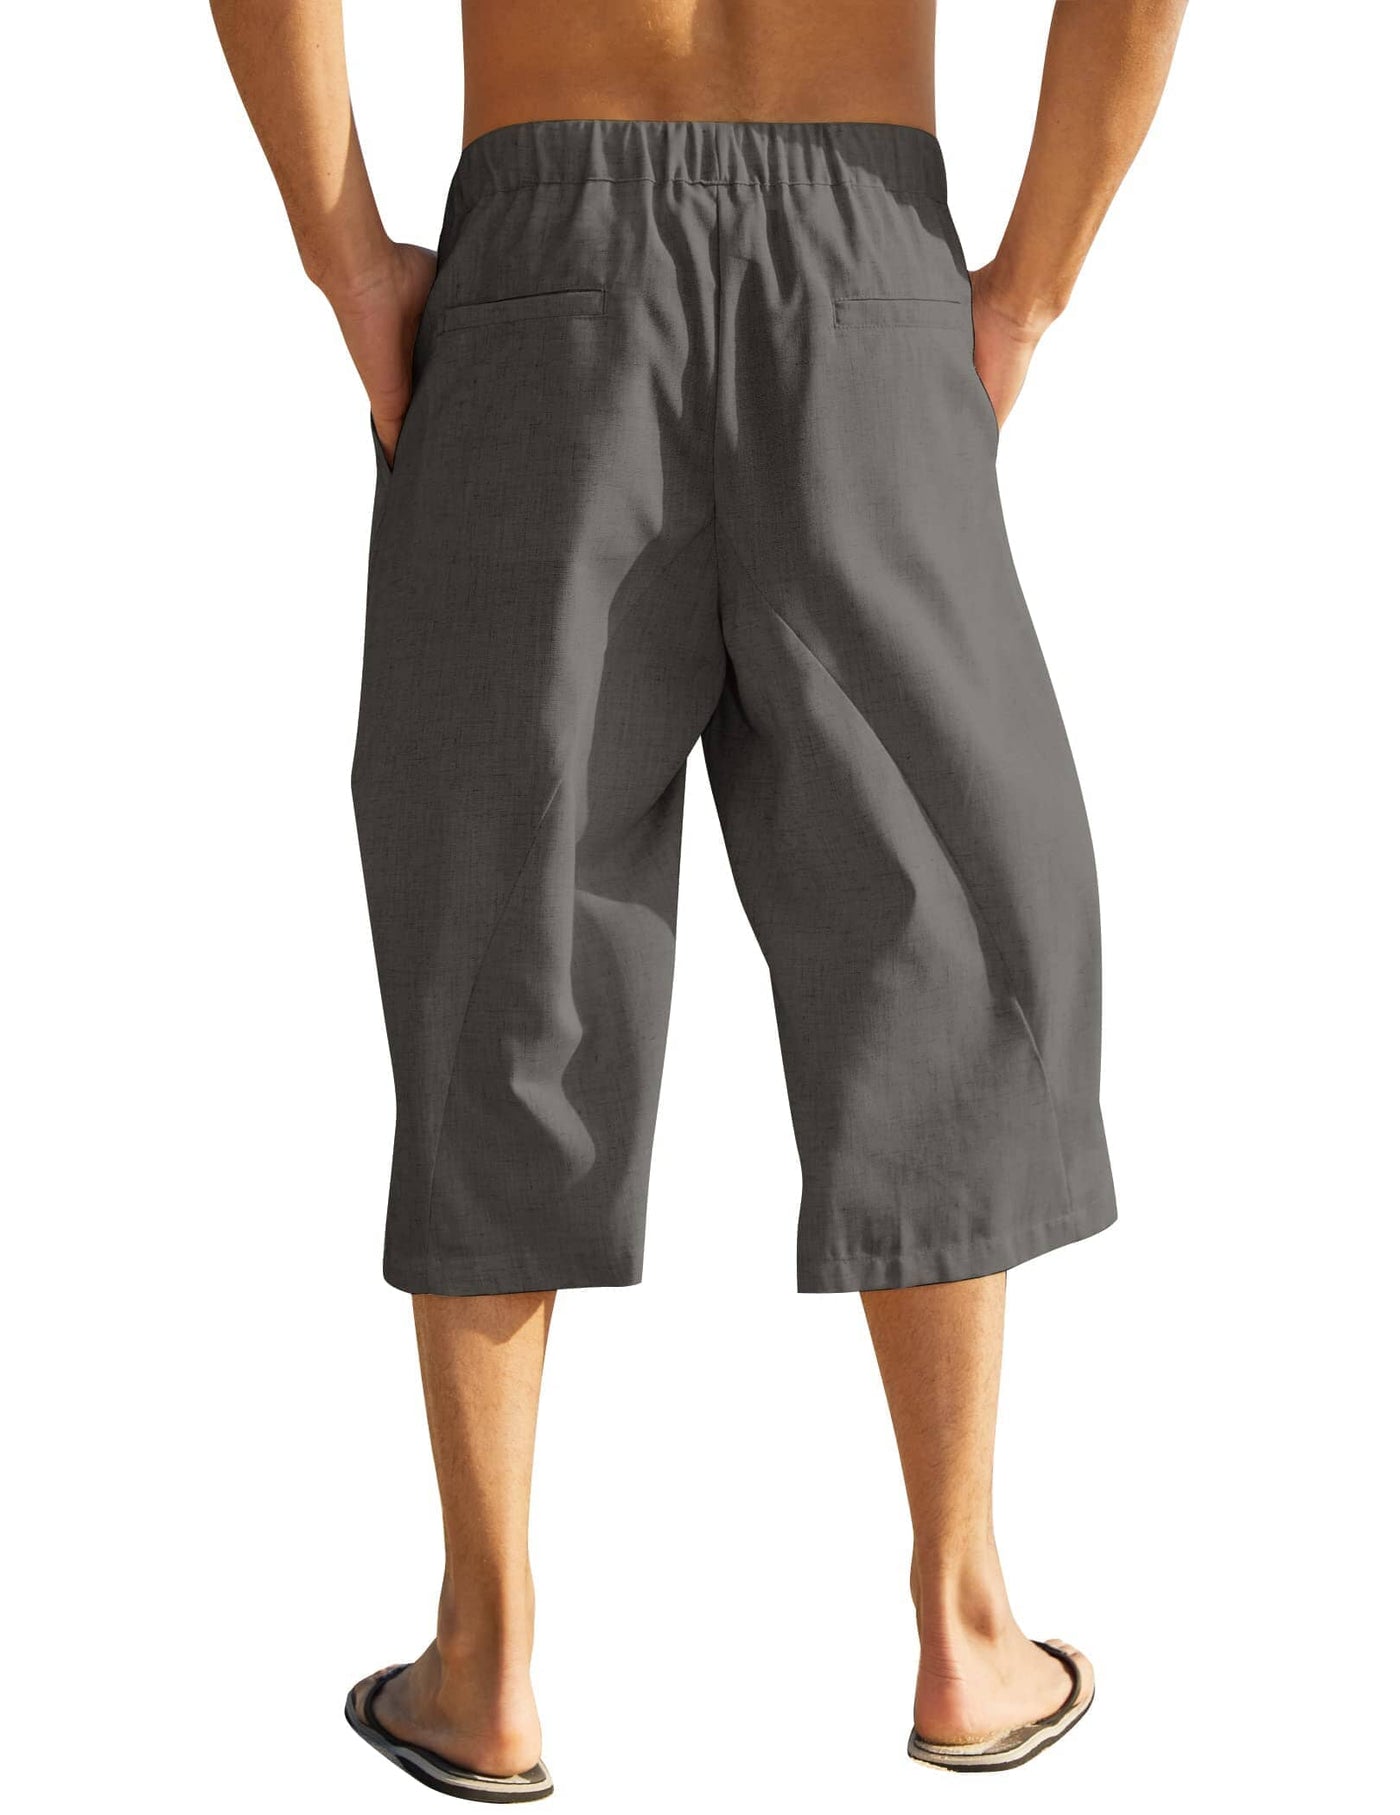 Coofandy Cotton Style Yoga Beach Pants (US Only) Pants coofandy 